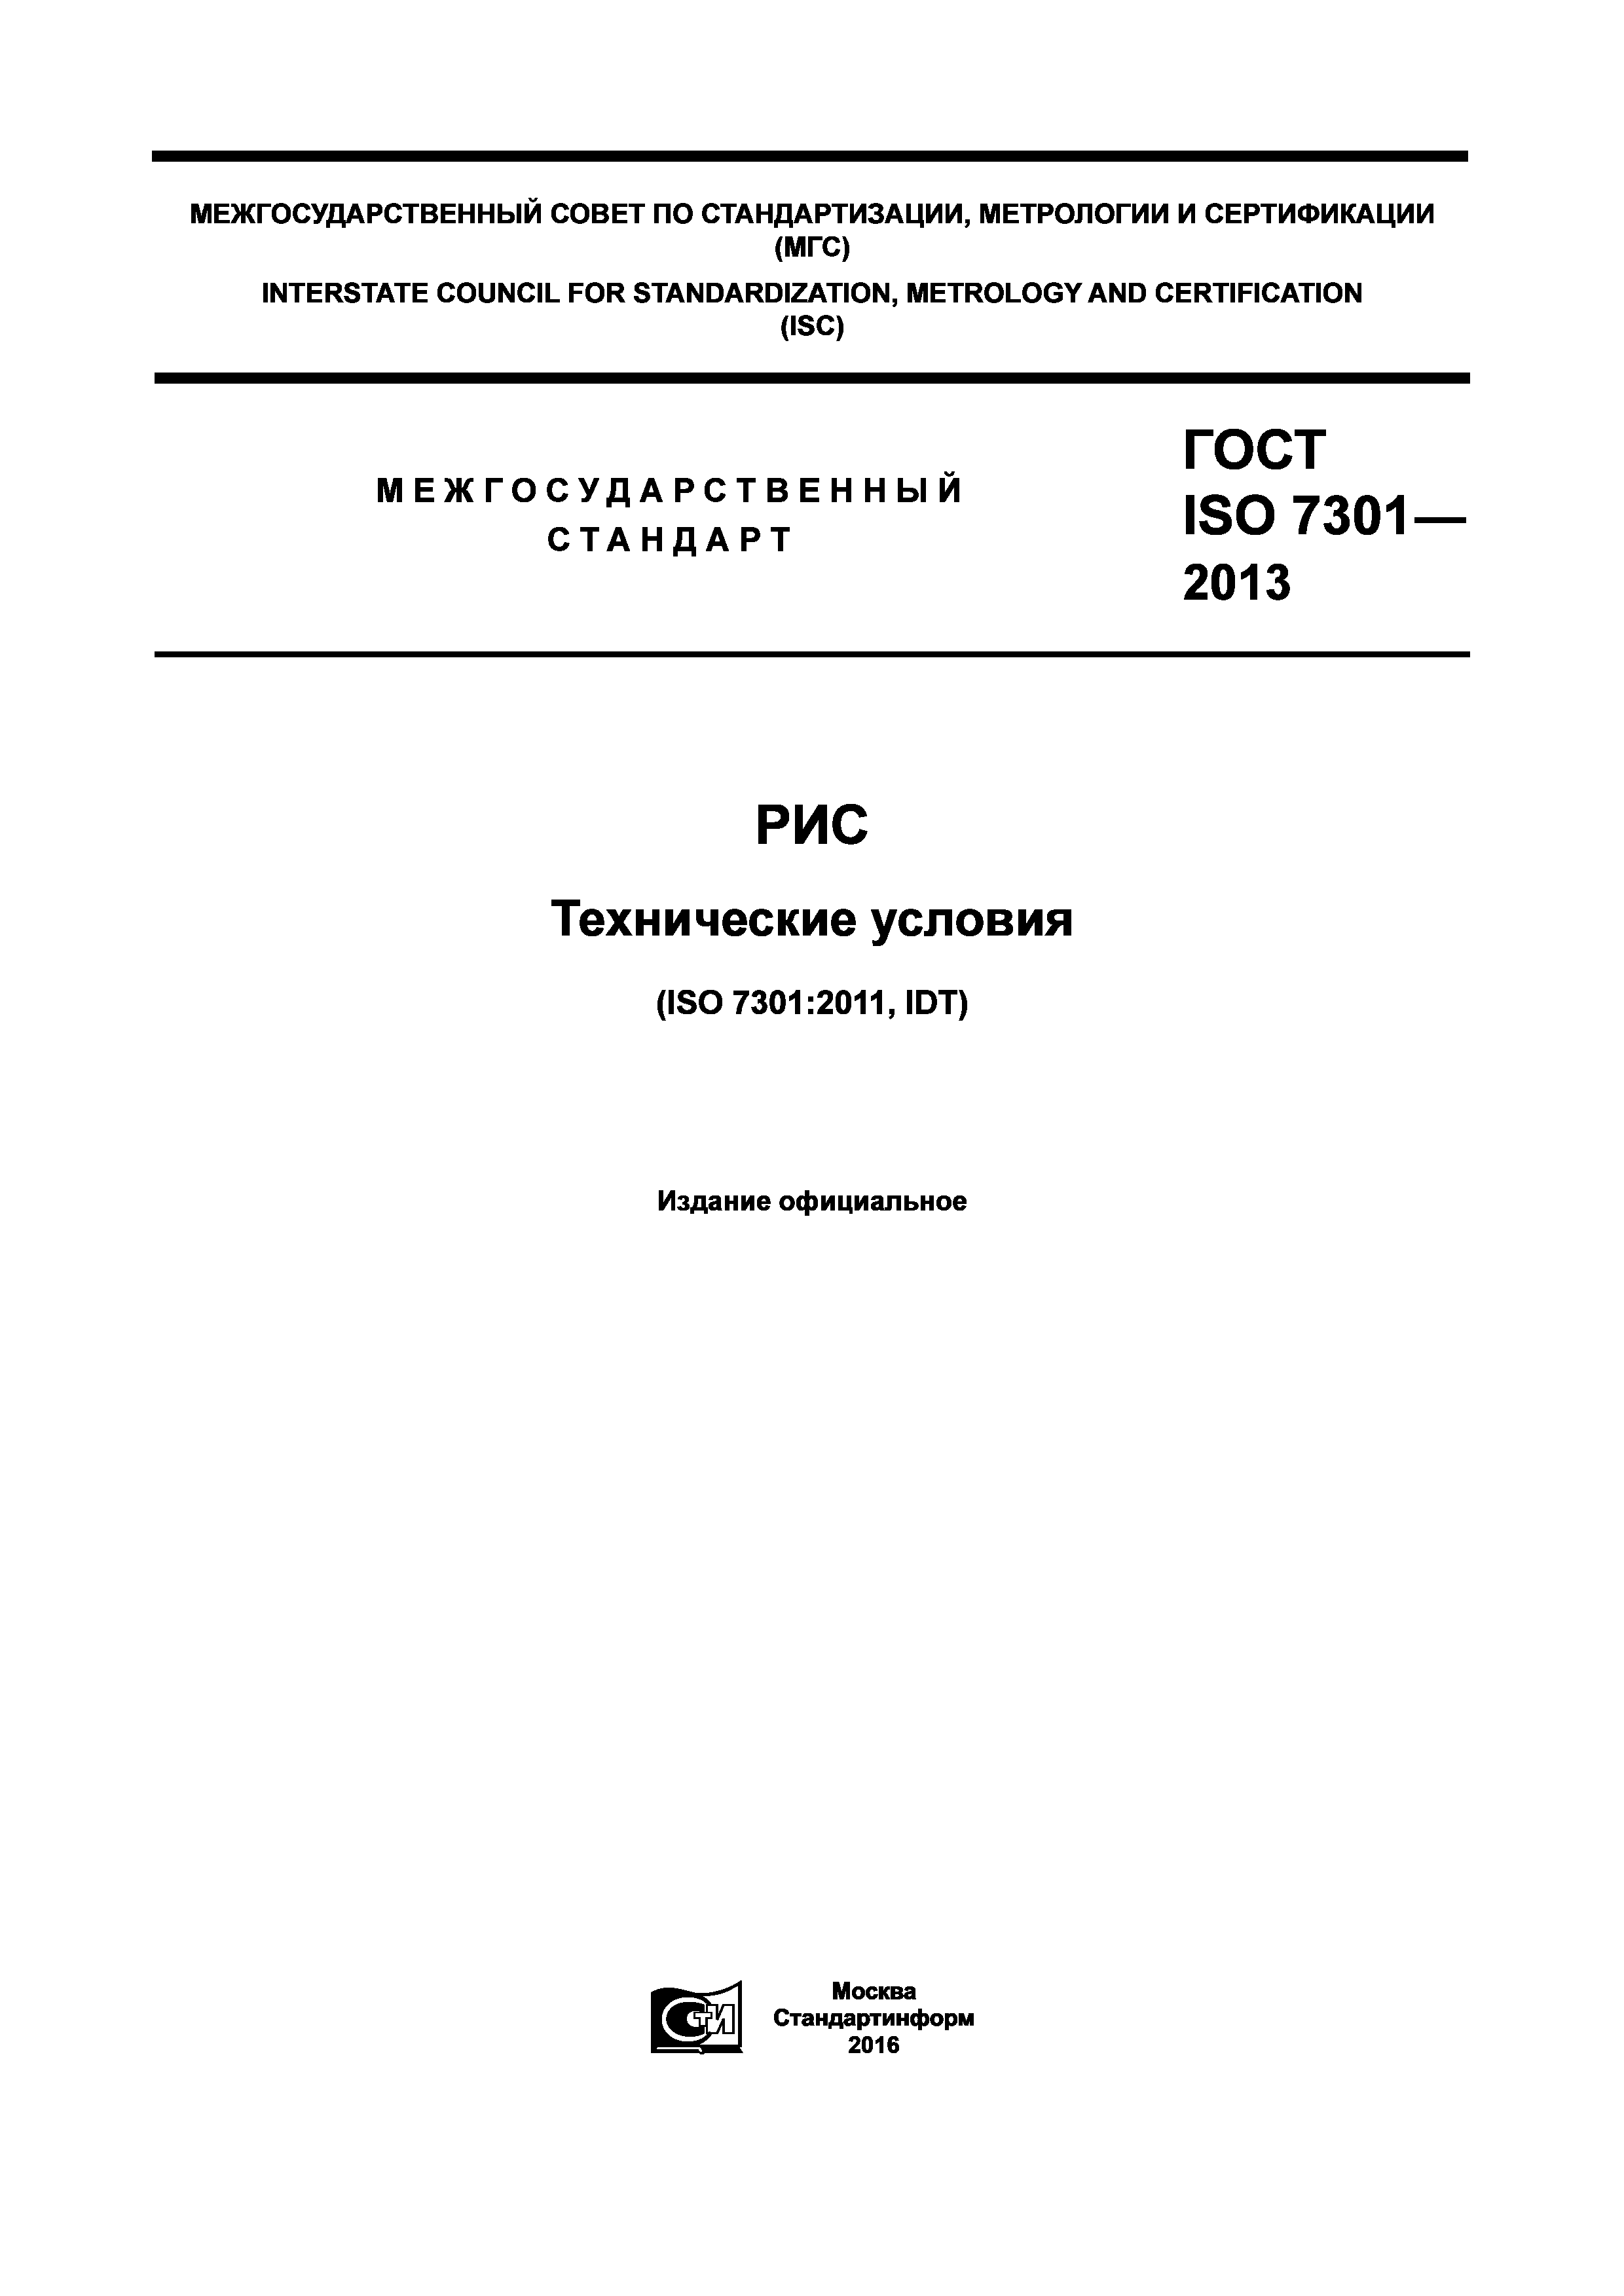 ГОСТ ISO 7301-2013